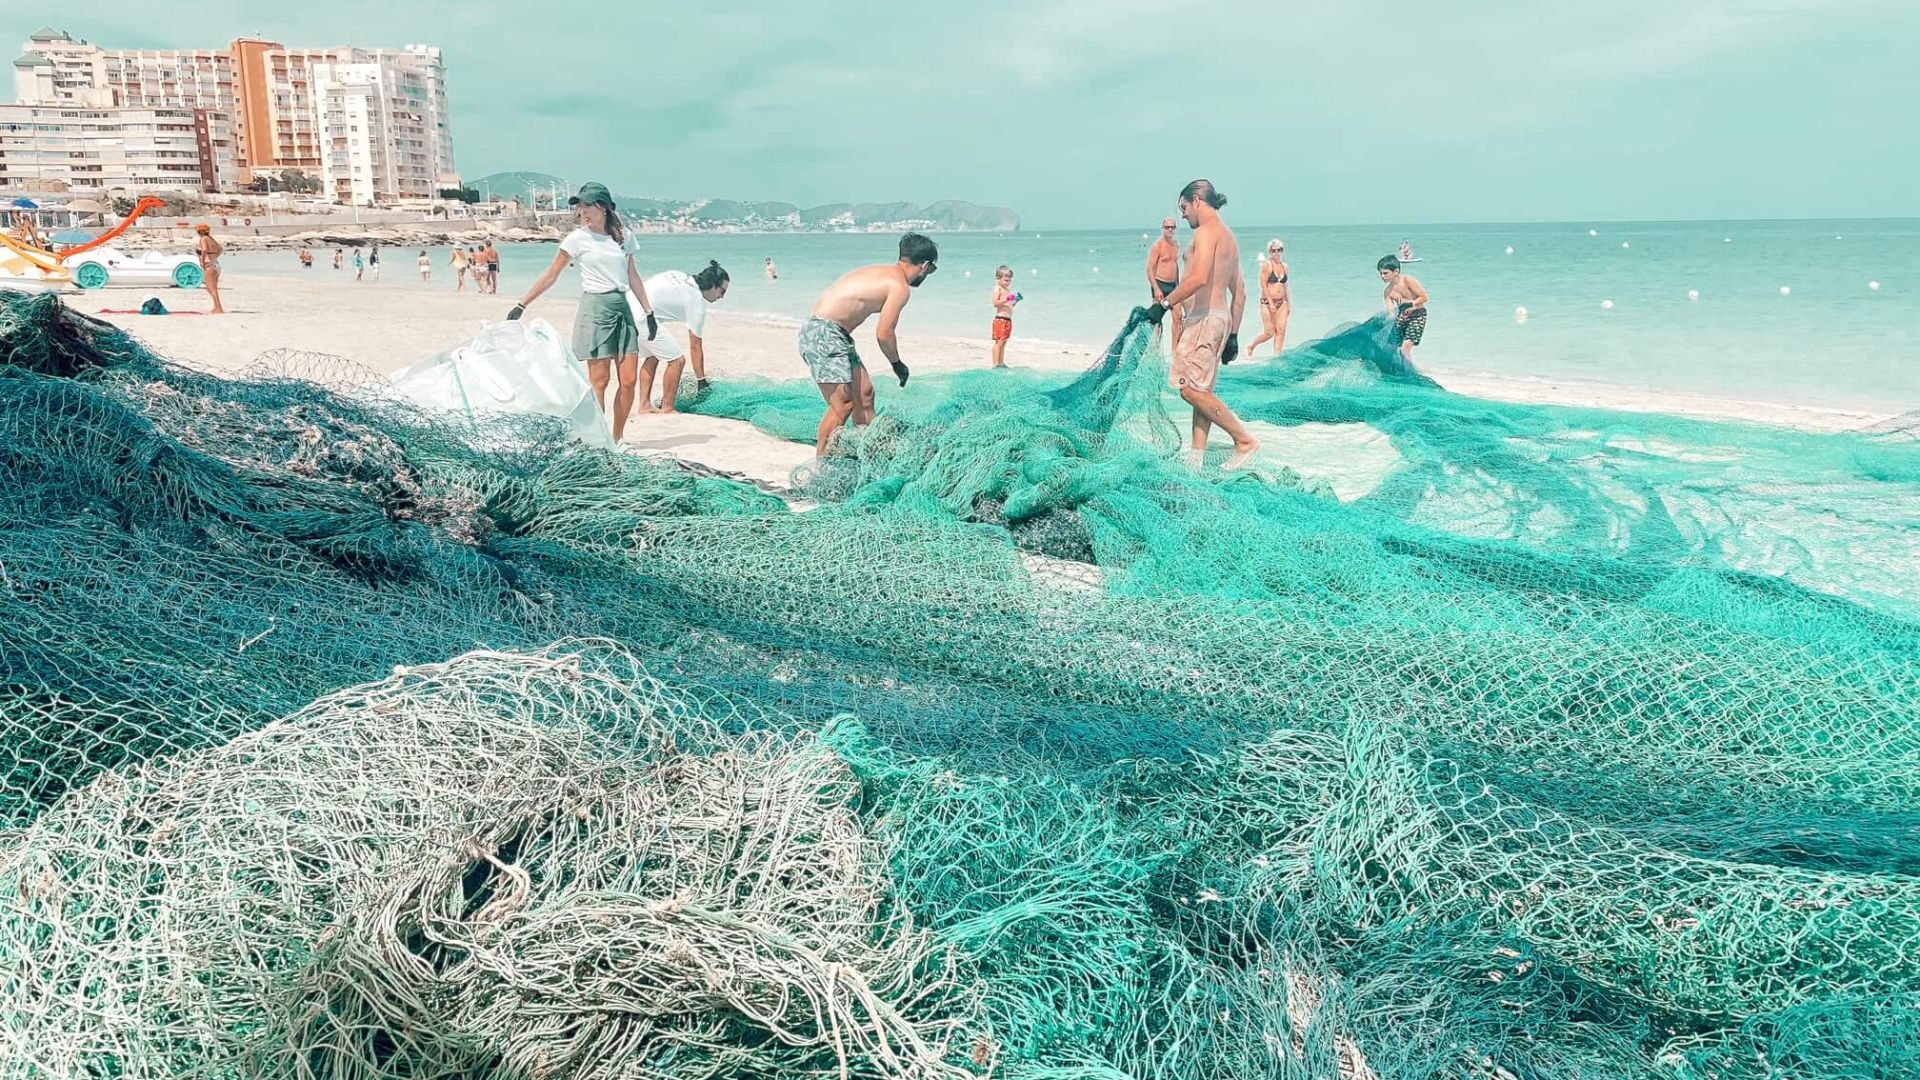 Alain Afflelou y Gravity Wave unen fuerzas para limpiar los océanos y promover la concienciación ambiental